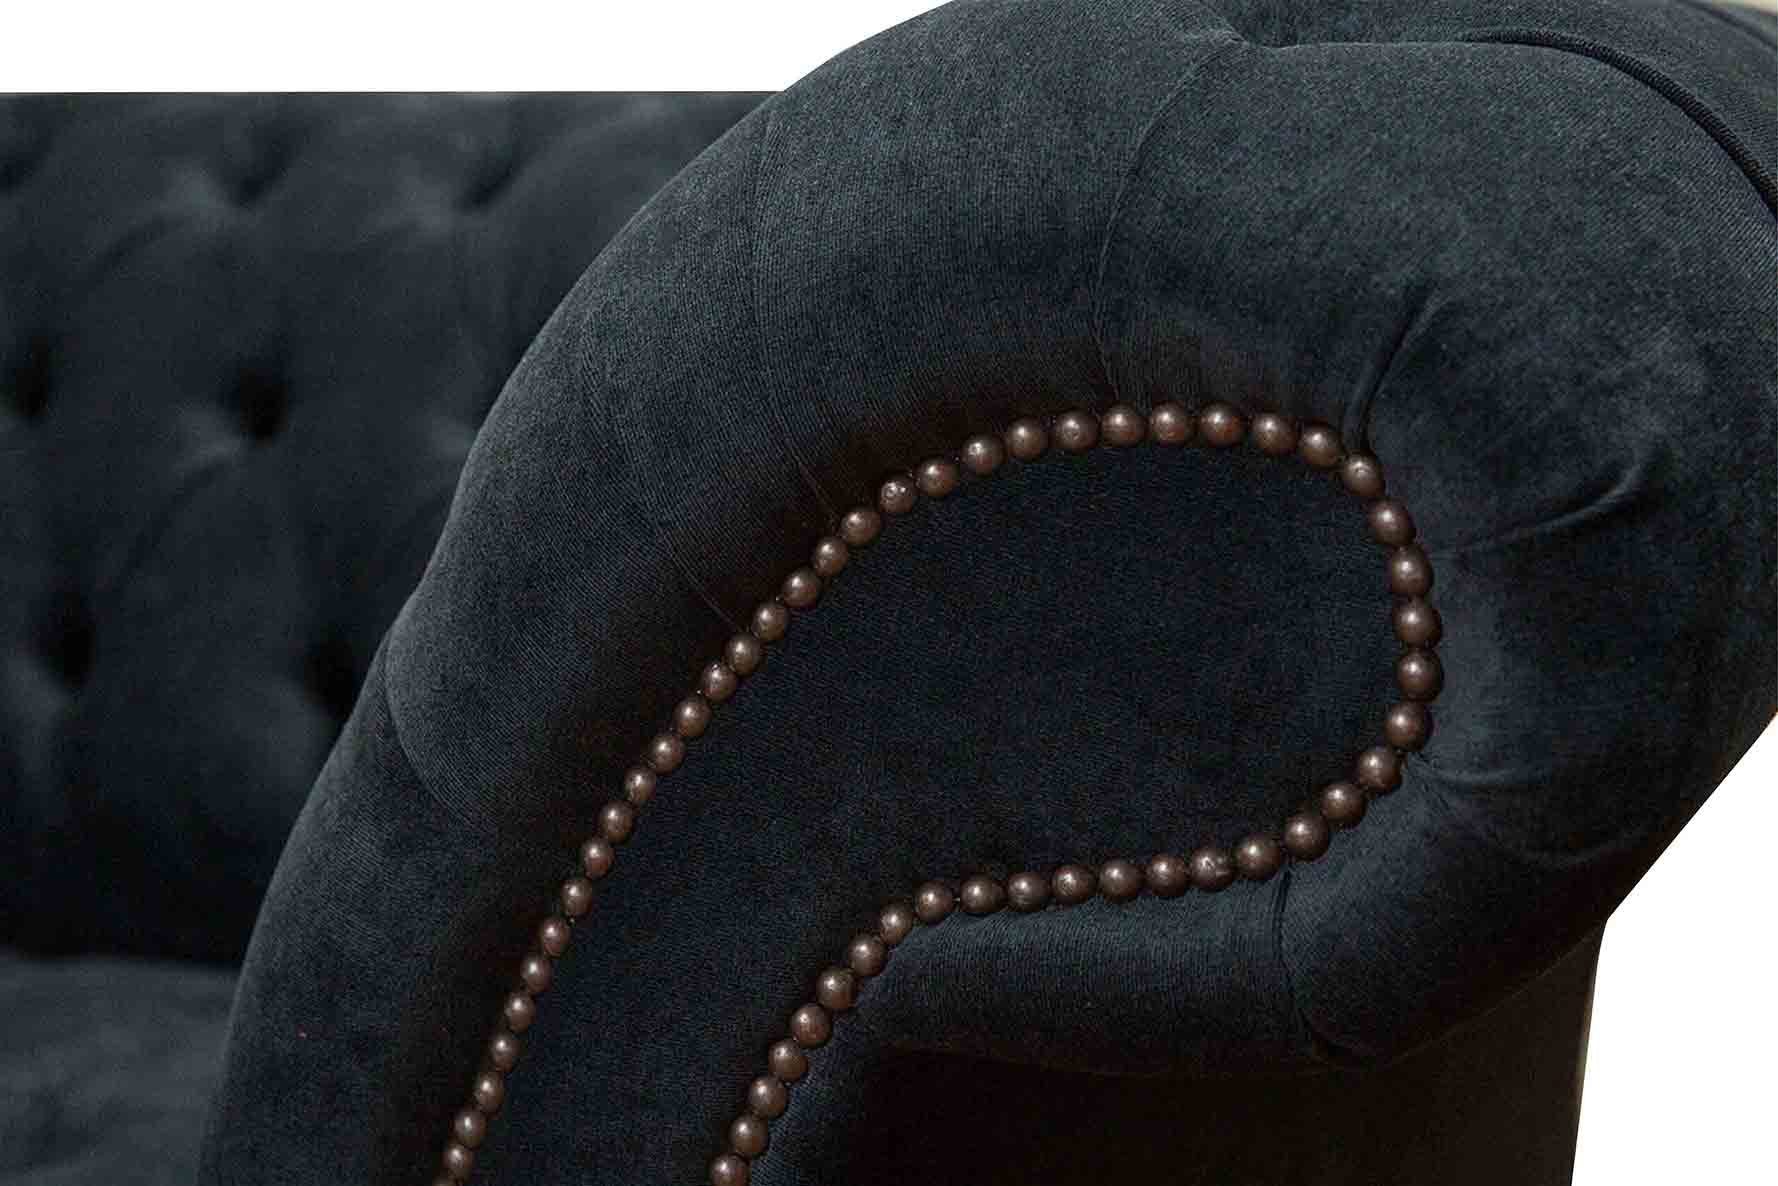 JVmoebel Chesterfield-Sessel, Sessel Wohnzimmer Design Klassisch Sitzer Schwarz Textil 1